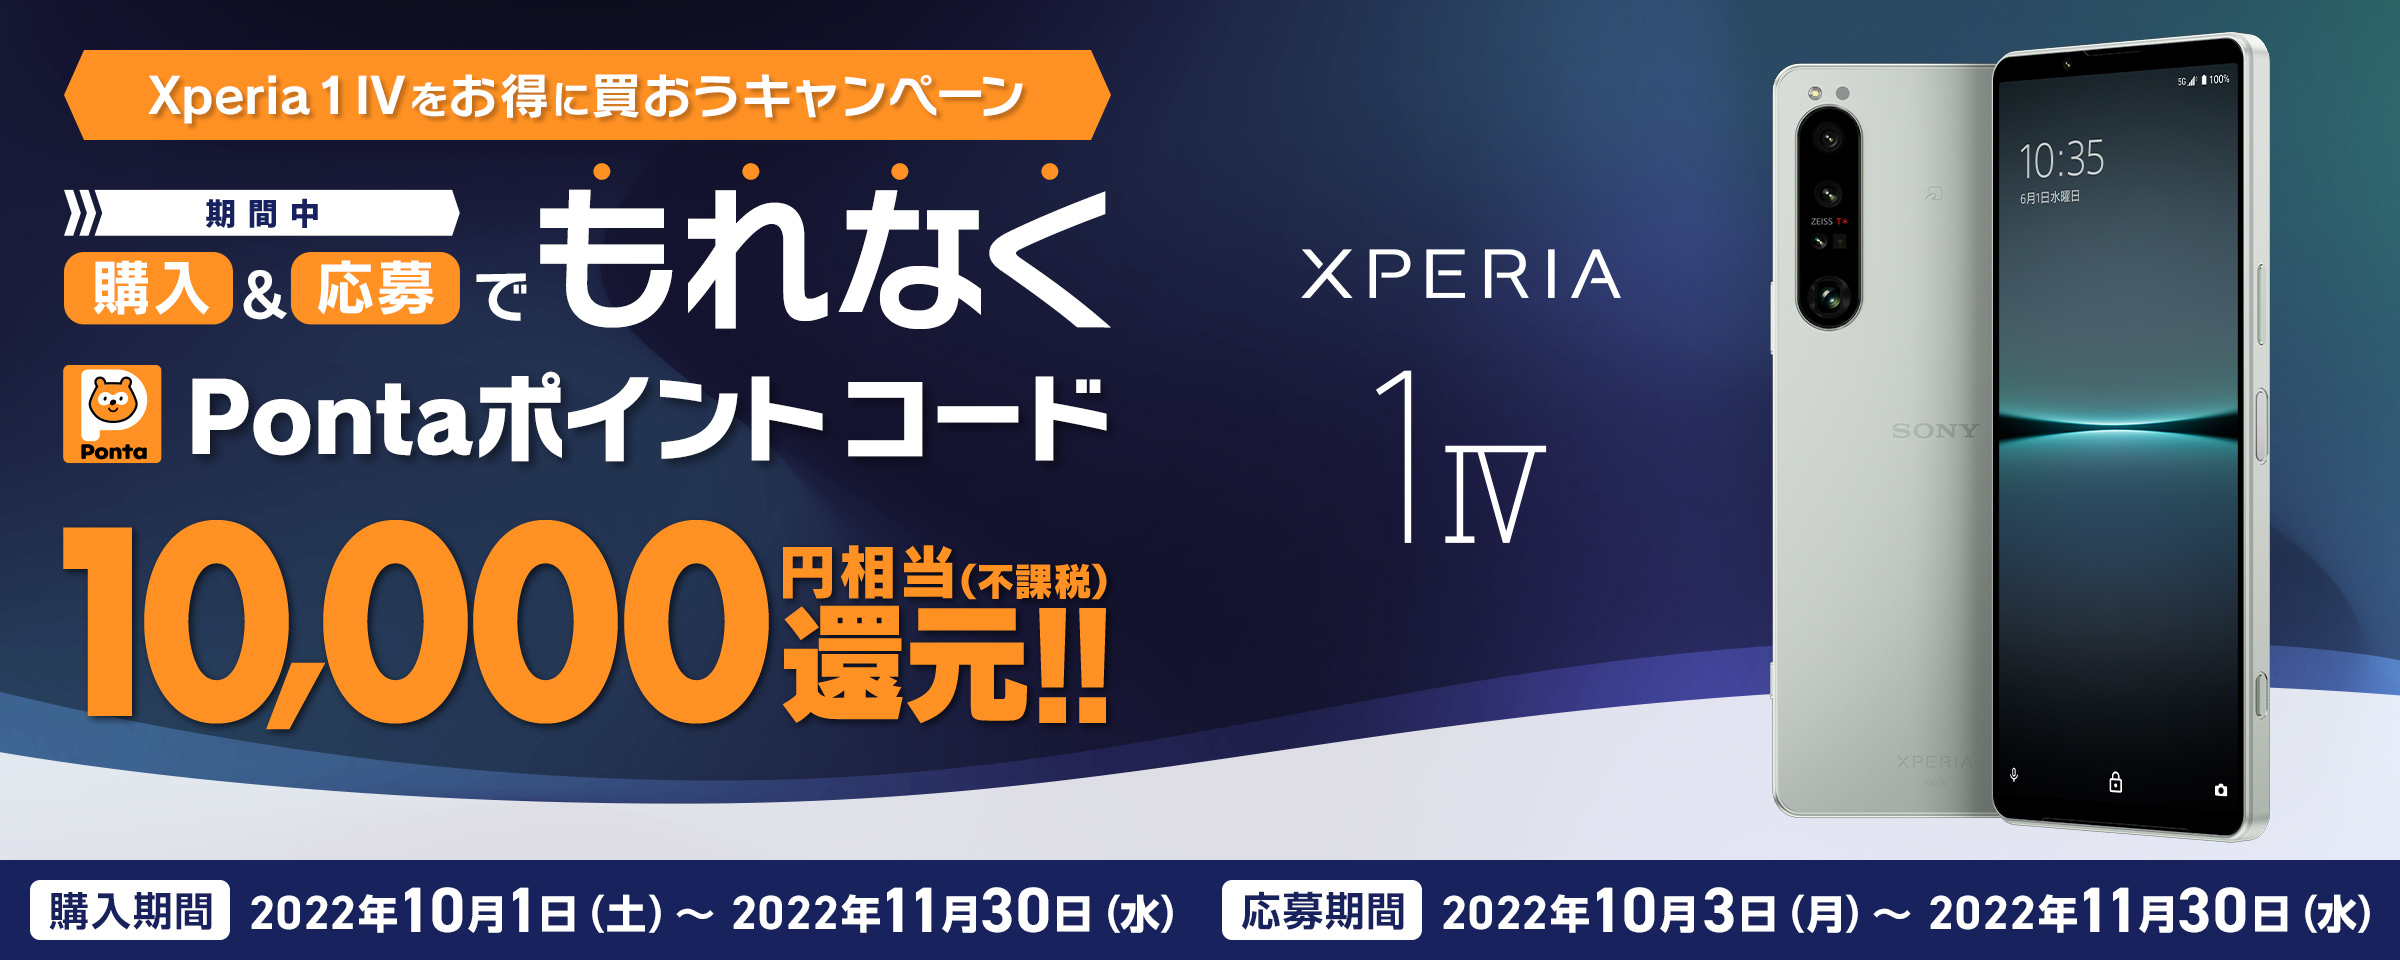 au Xperia 1 IV をお得に買おうキャンペーン 期間中 購入＆応募でもれなく Pontaポイントコード 10,000円相当(不課税)還元!! ※別途キャンペーンサイトへアクセスの上ご応募が必要です。 期間 2022年10月3日(月)〜2022.11.30[水]